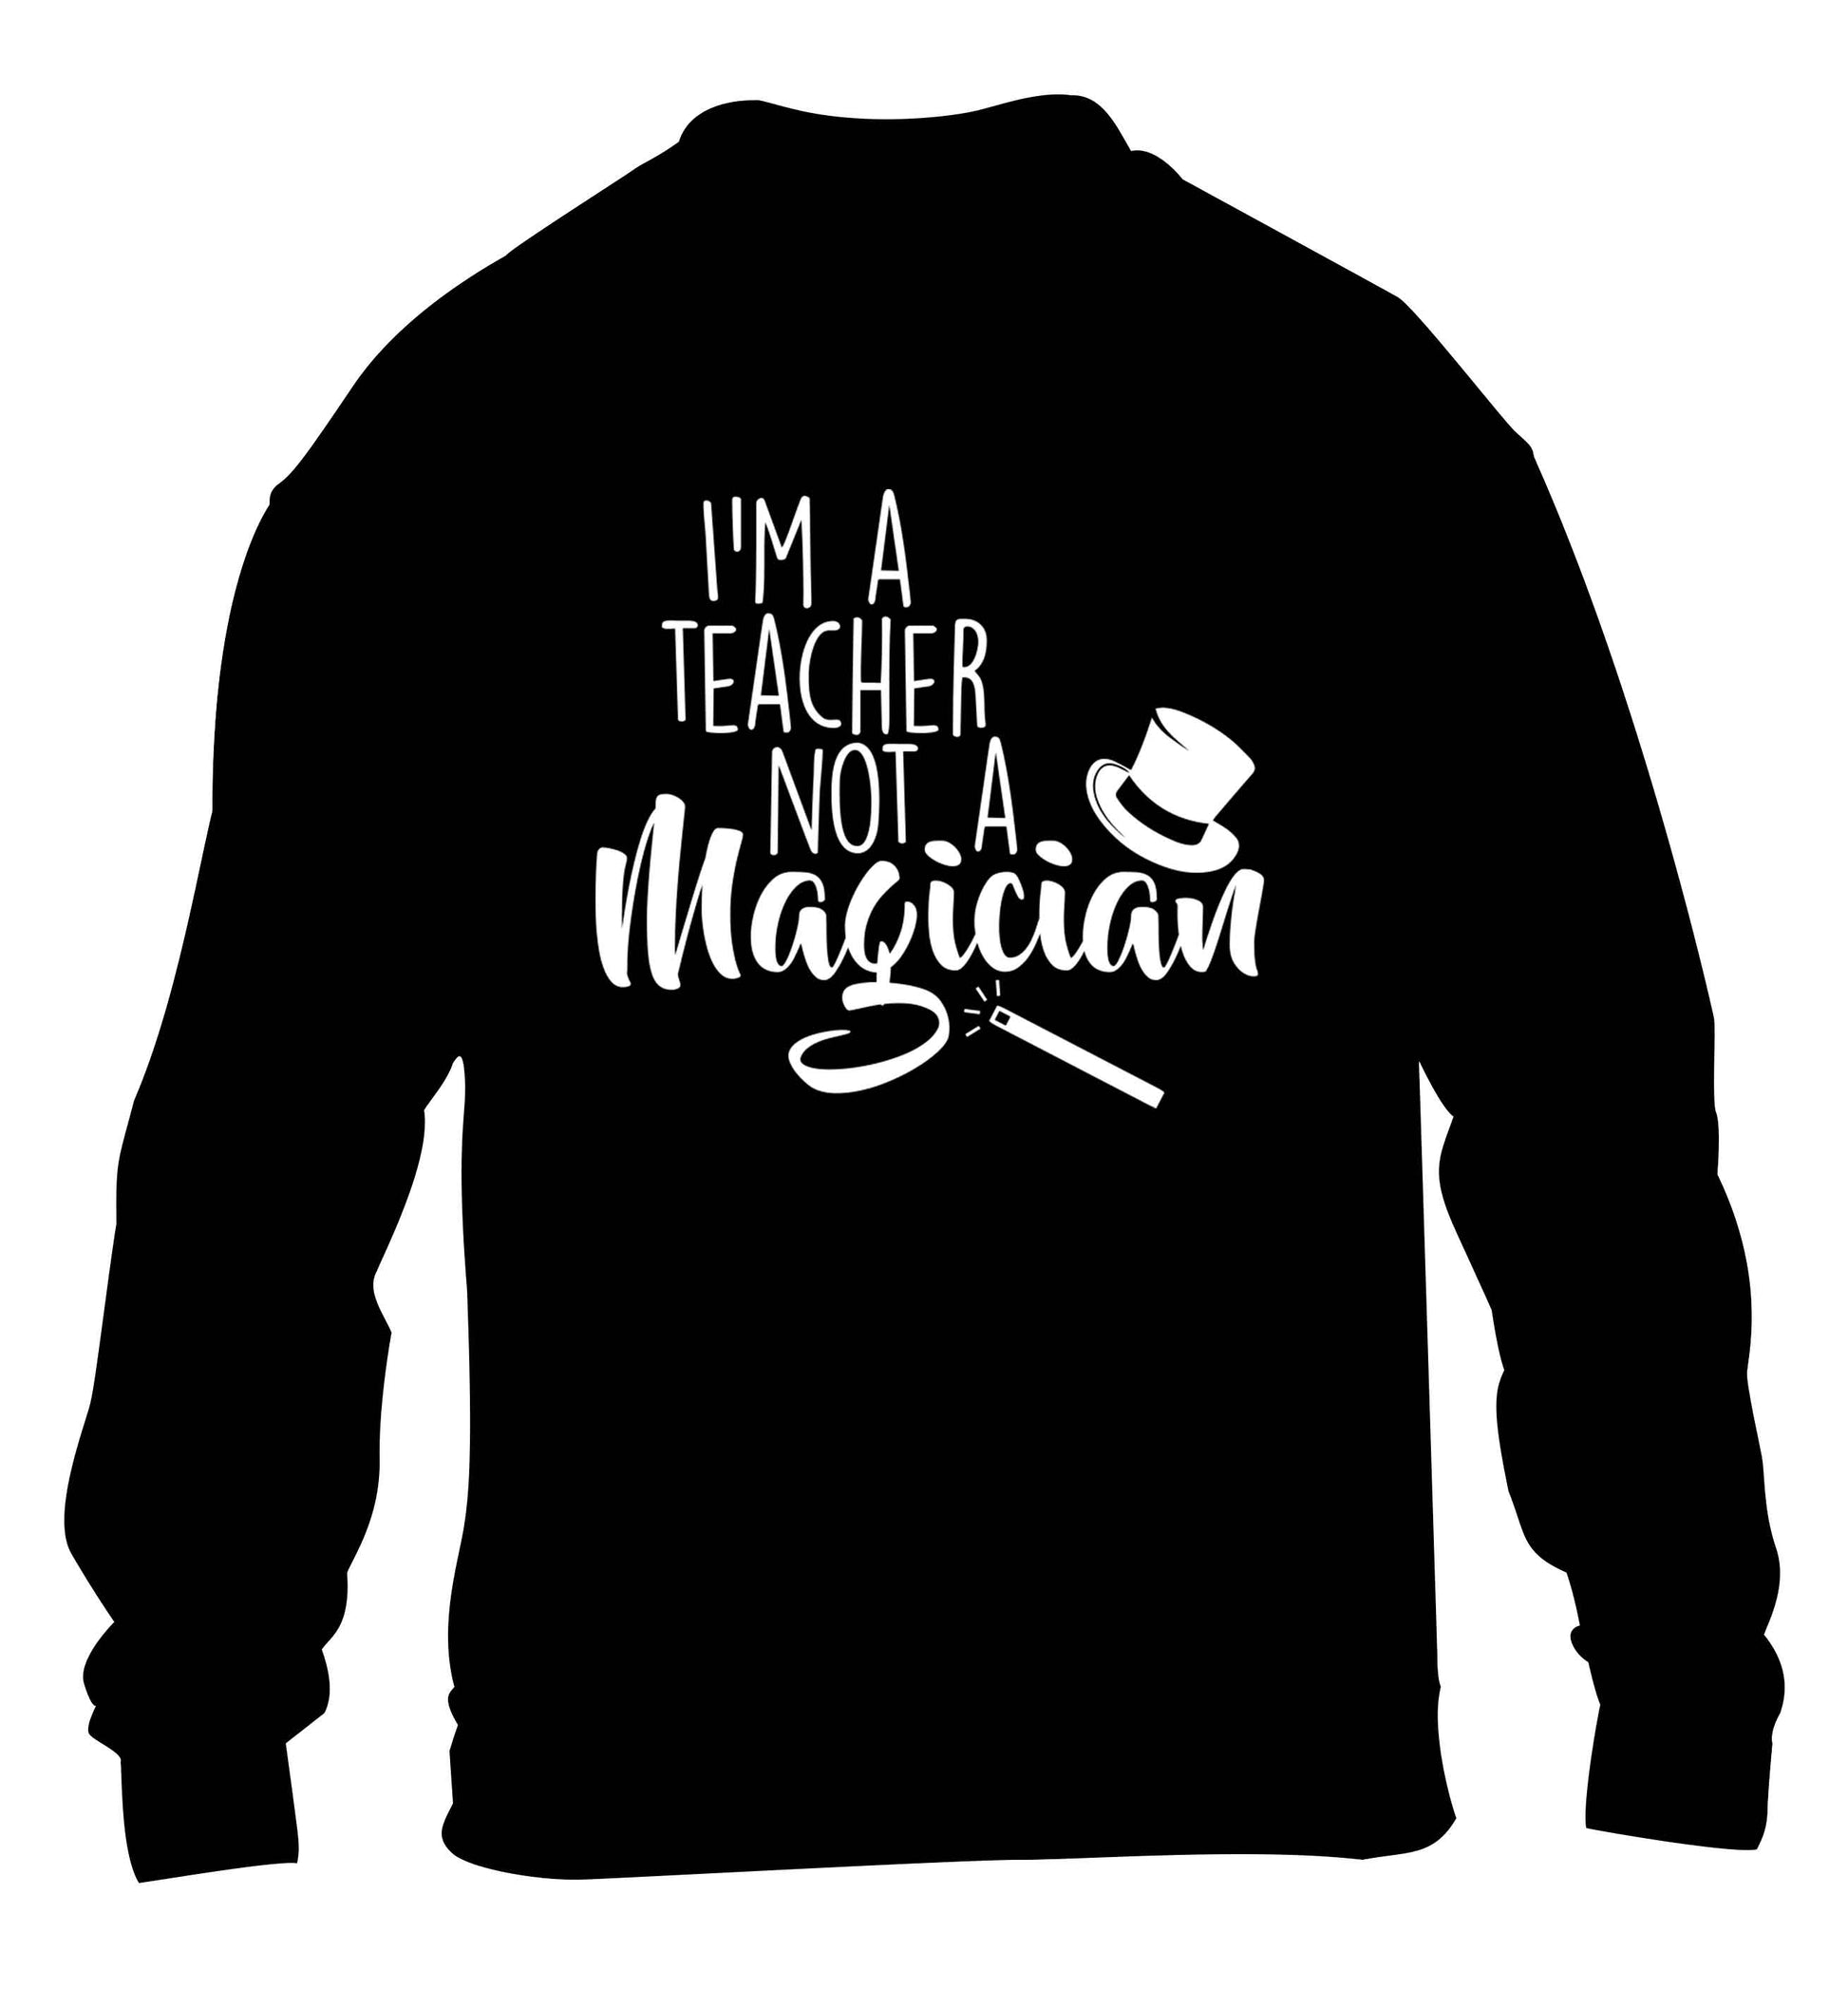 I'm a teacher not a magician children's black sweater 12-13 Years